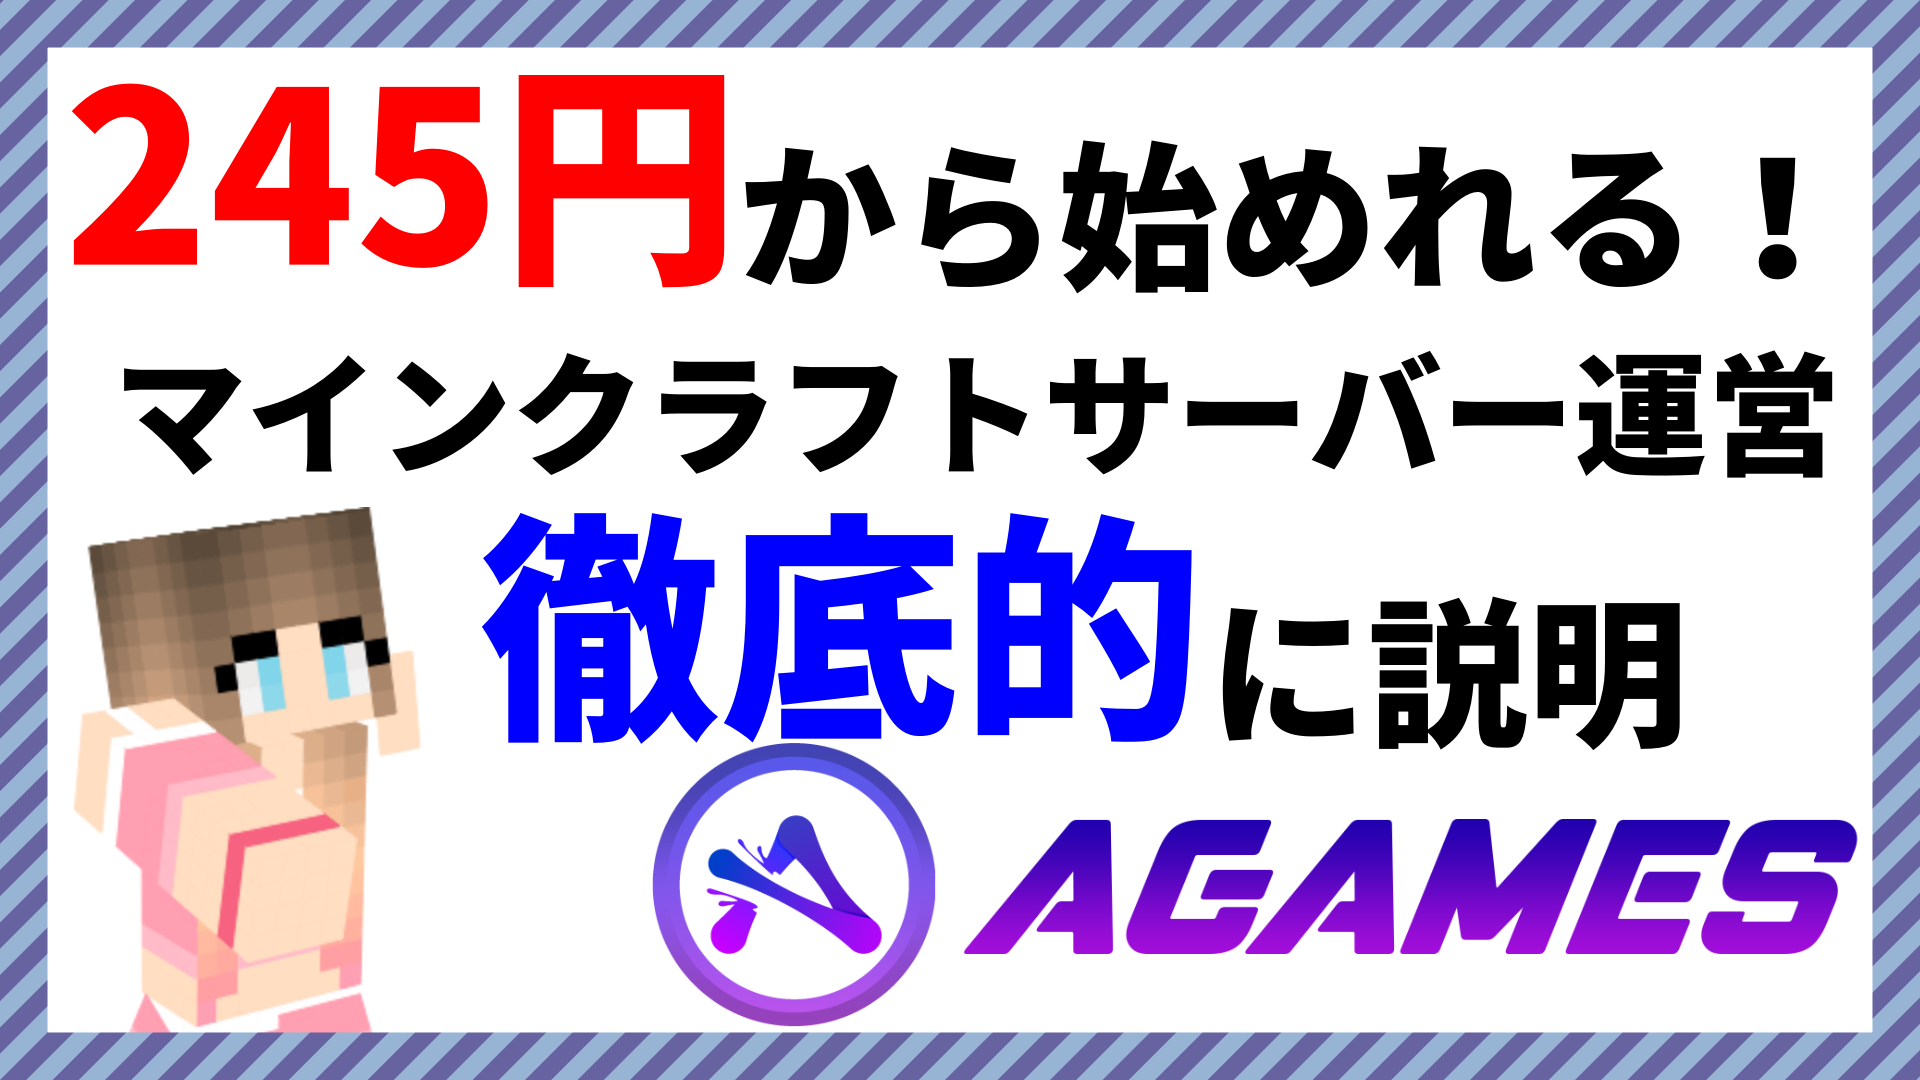 格安 245円から始めれる マインクラフトサーバーの運営 Agames Jp なりかくんのブログ